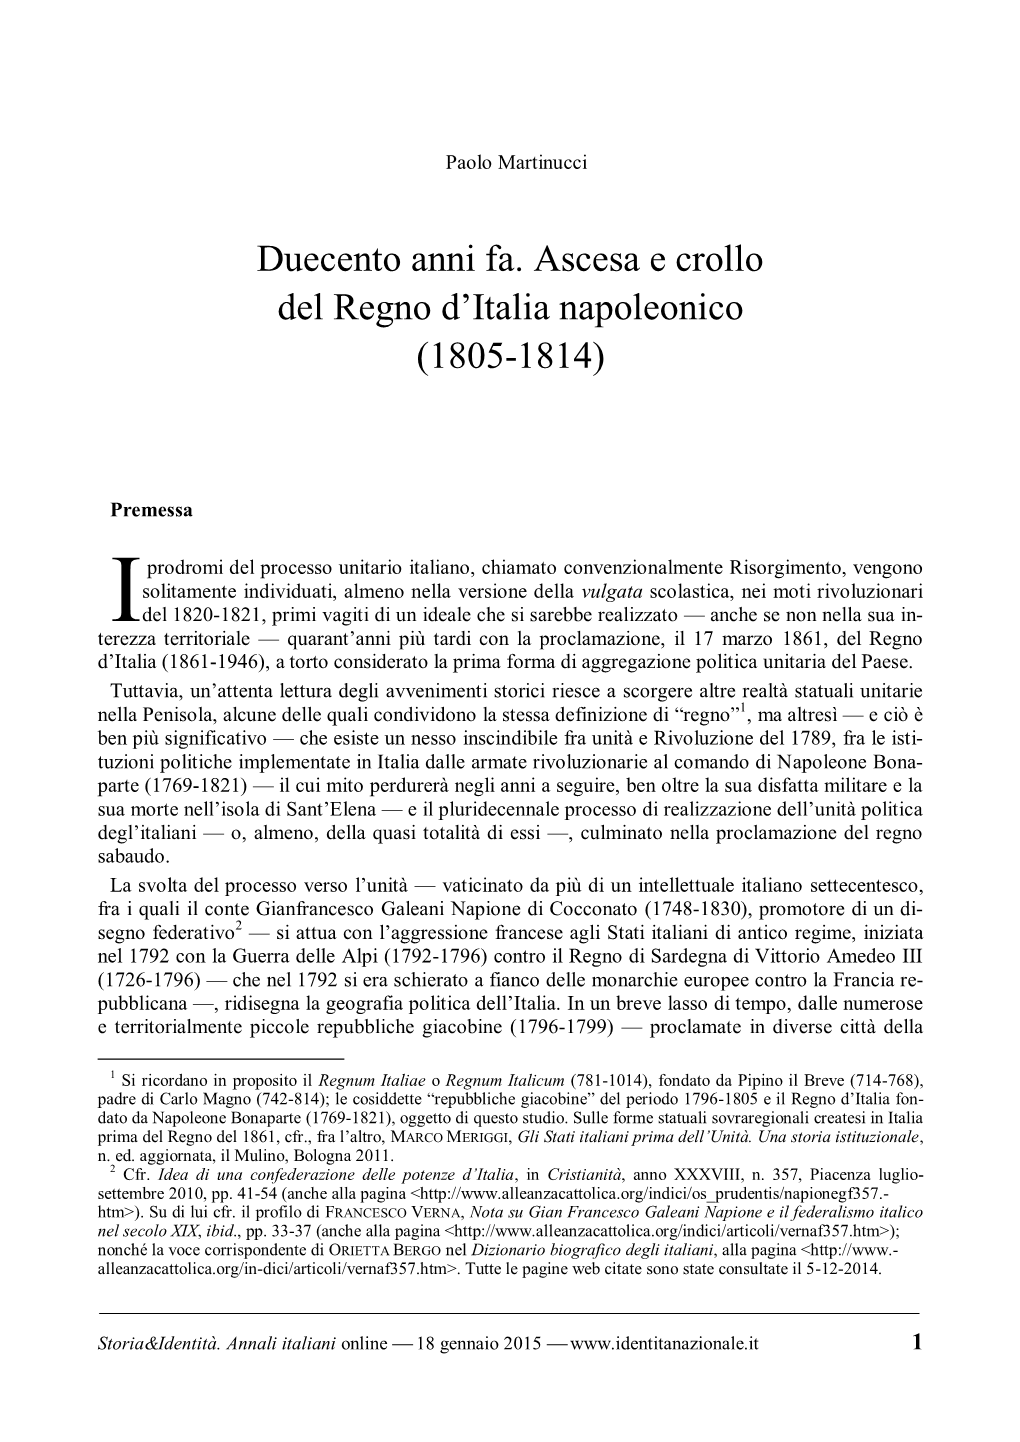 Duecento Anni Fa. Ascesa E Crollo Del Regno D'italia Napoleonico (1805